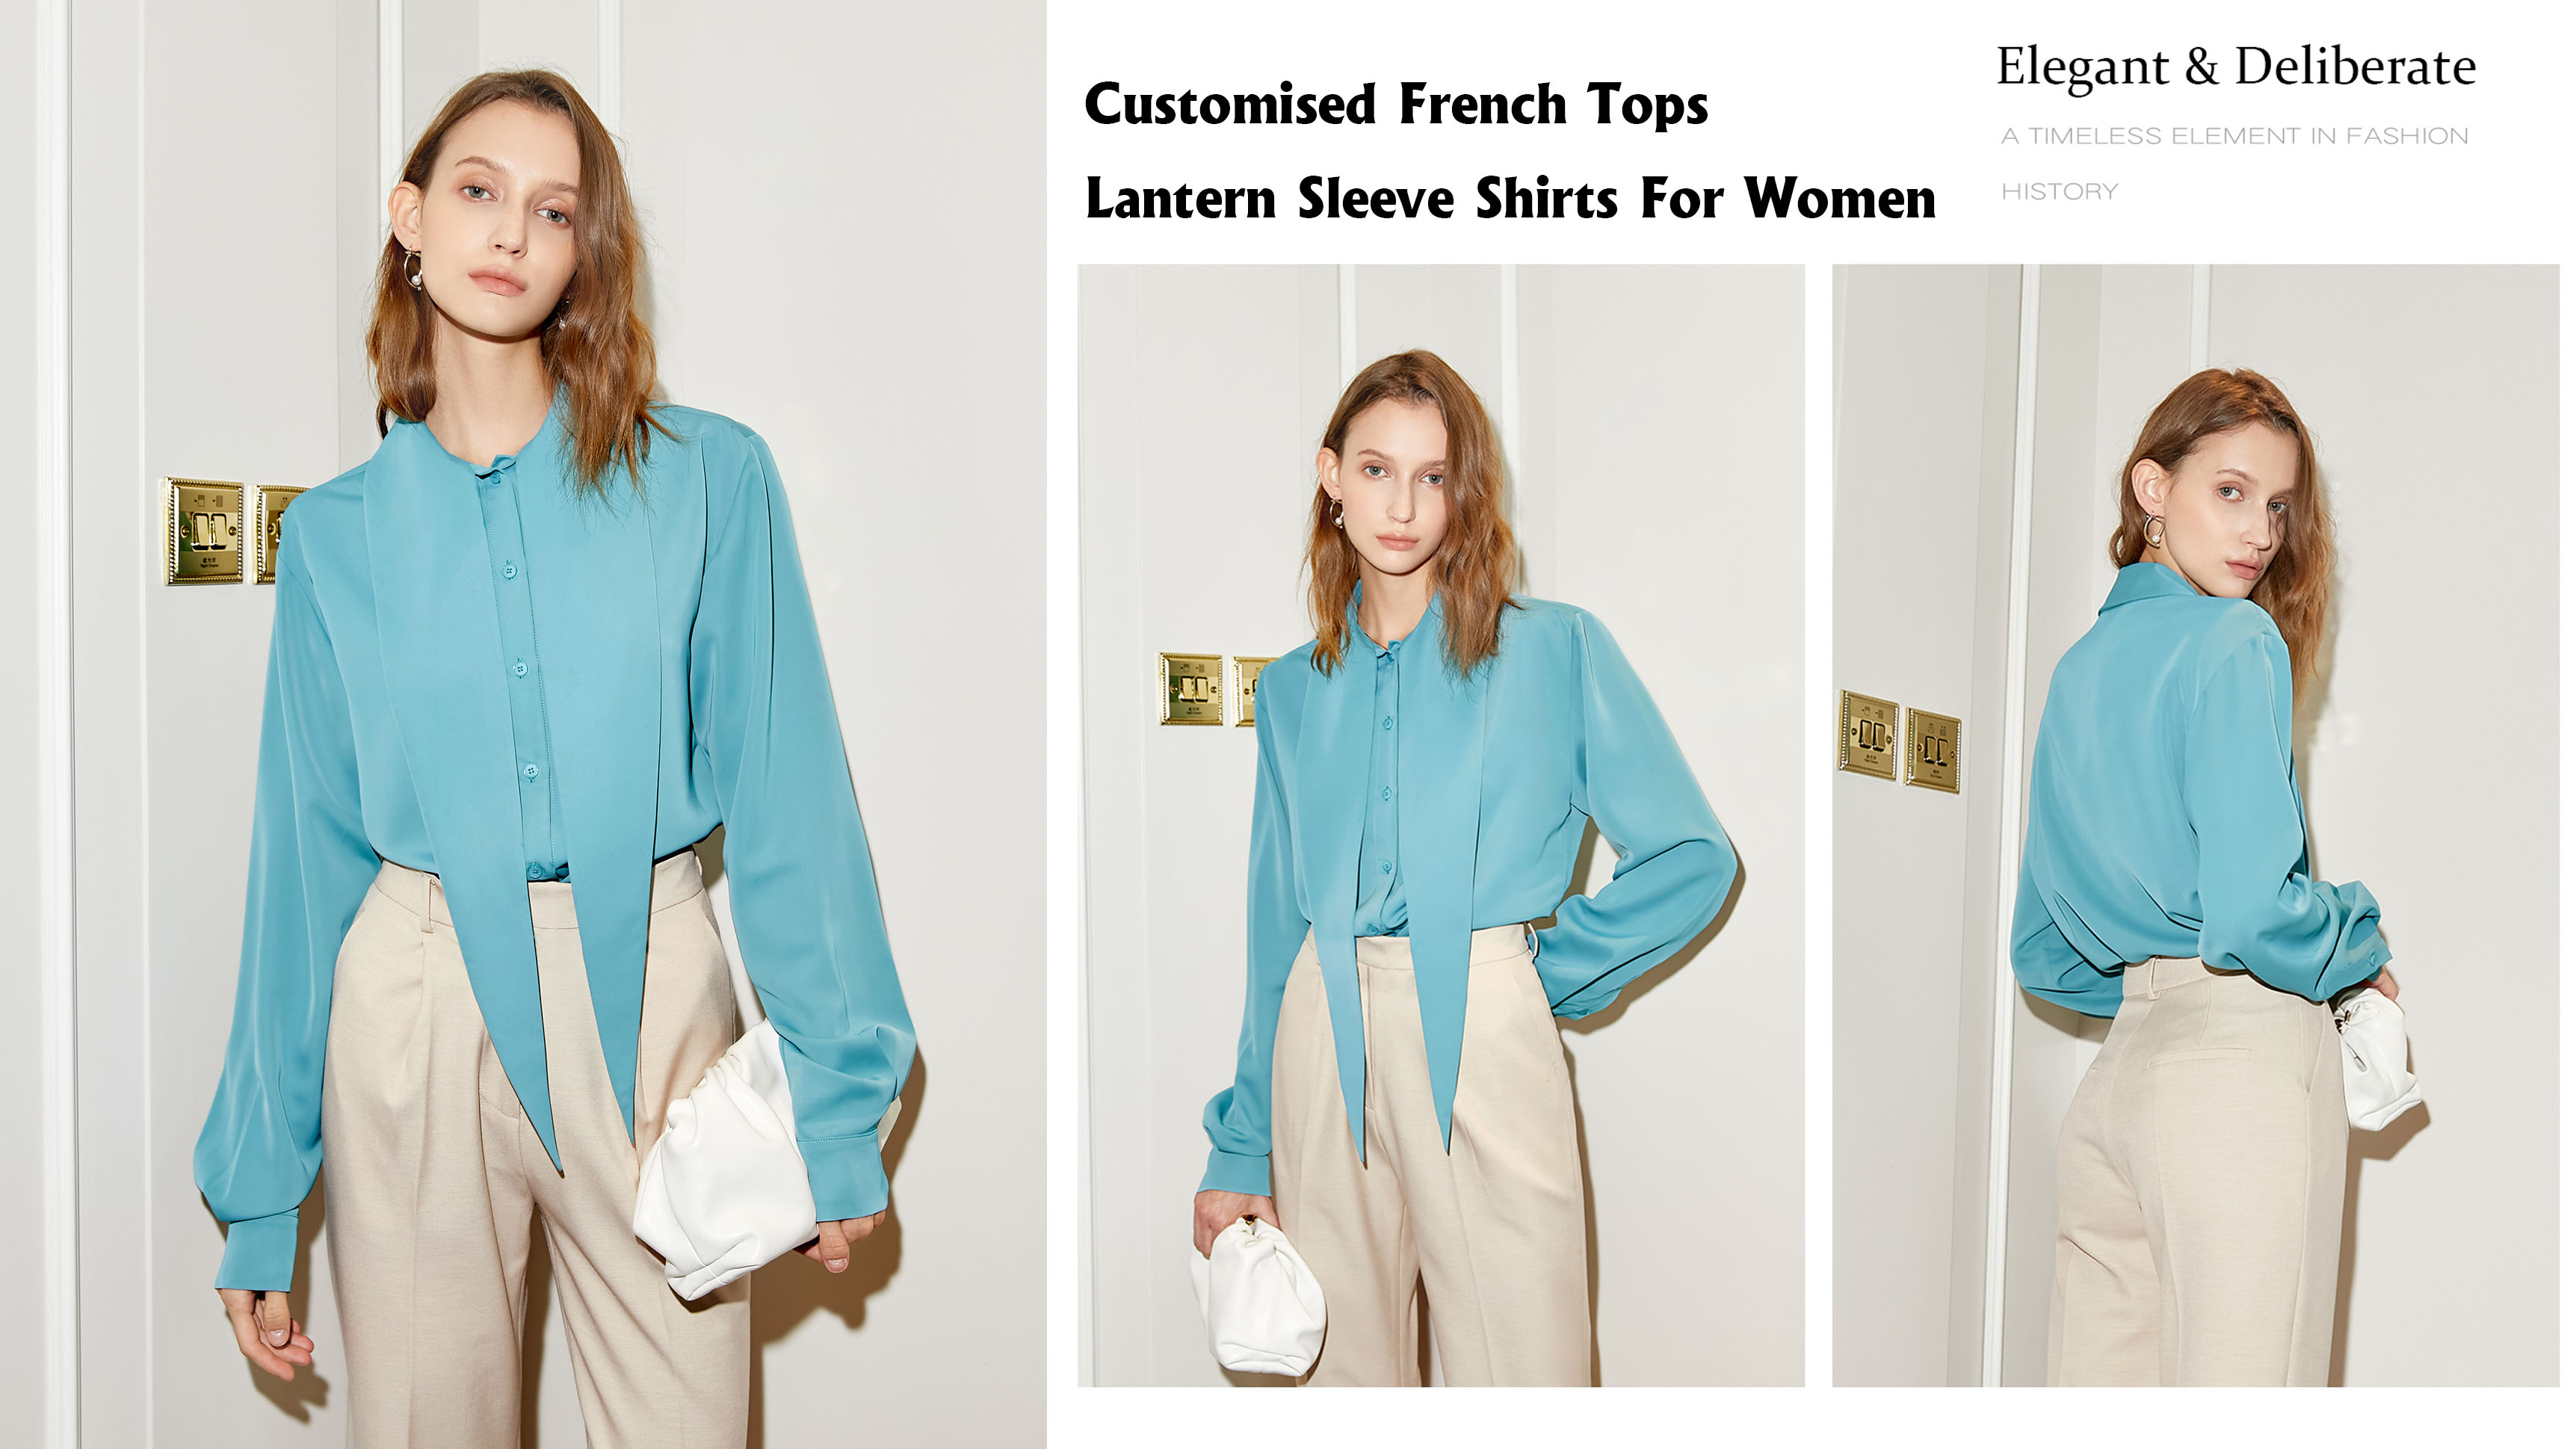 Camisas francesas personalizadas da luva da lanterna das partes superiores para mulheres